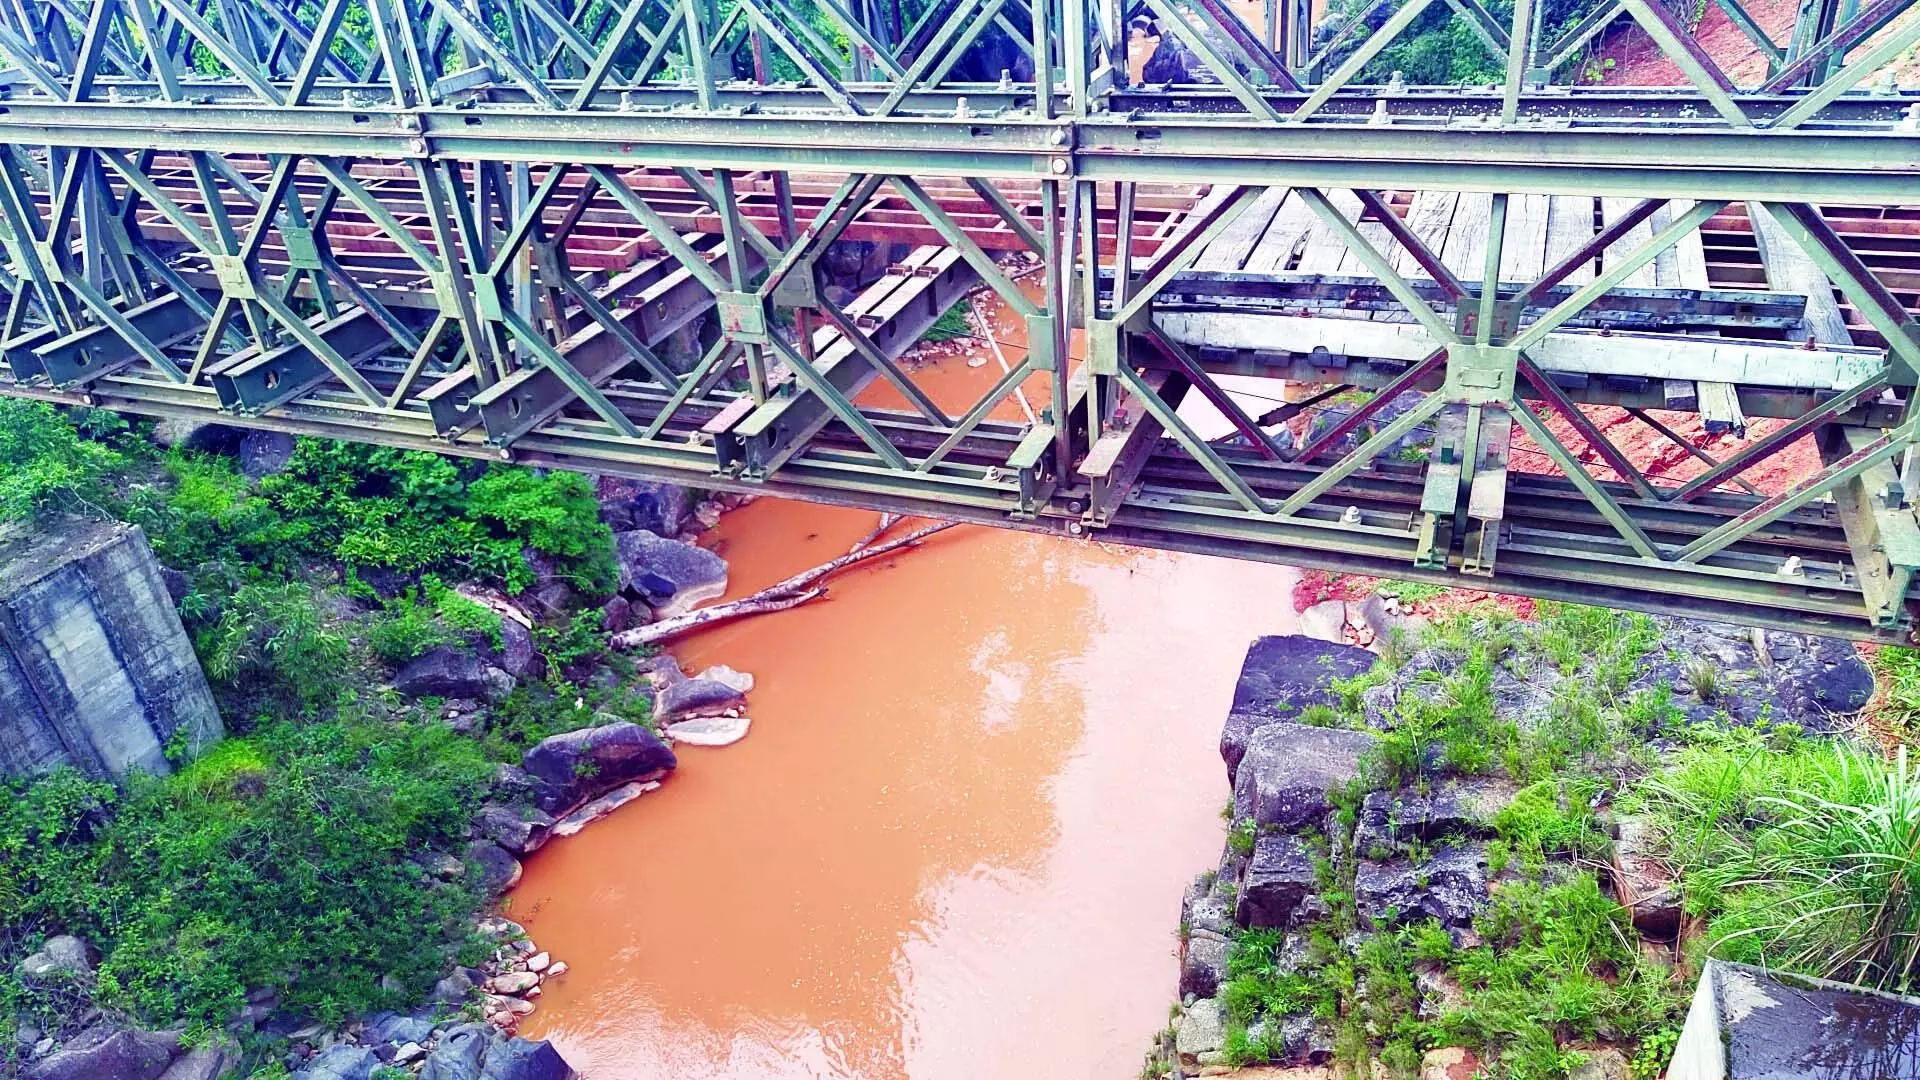 उमियाम नदी में मिट्टी की अनियंत्रित डंपिंग से गंभीर प्रदूषण हो गया